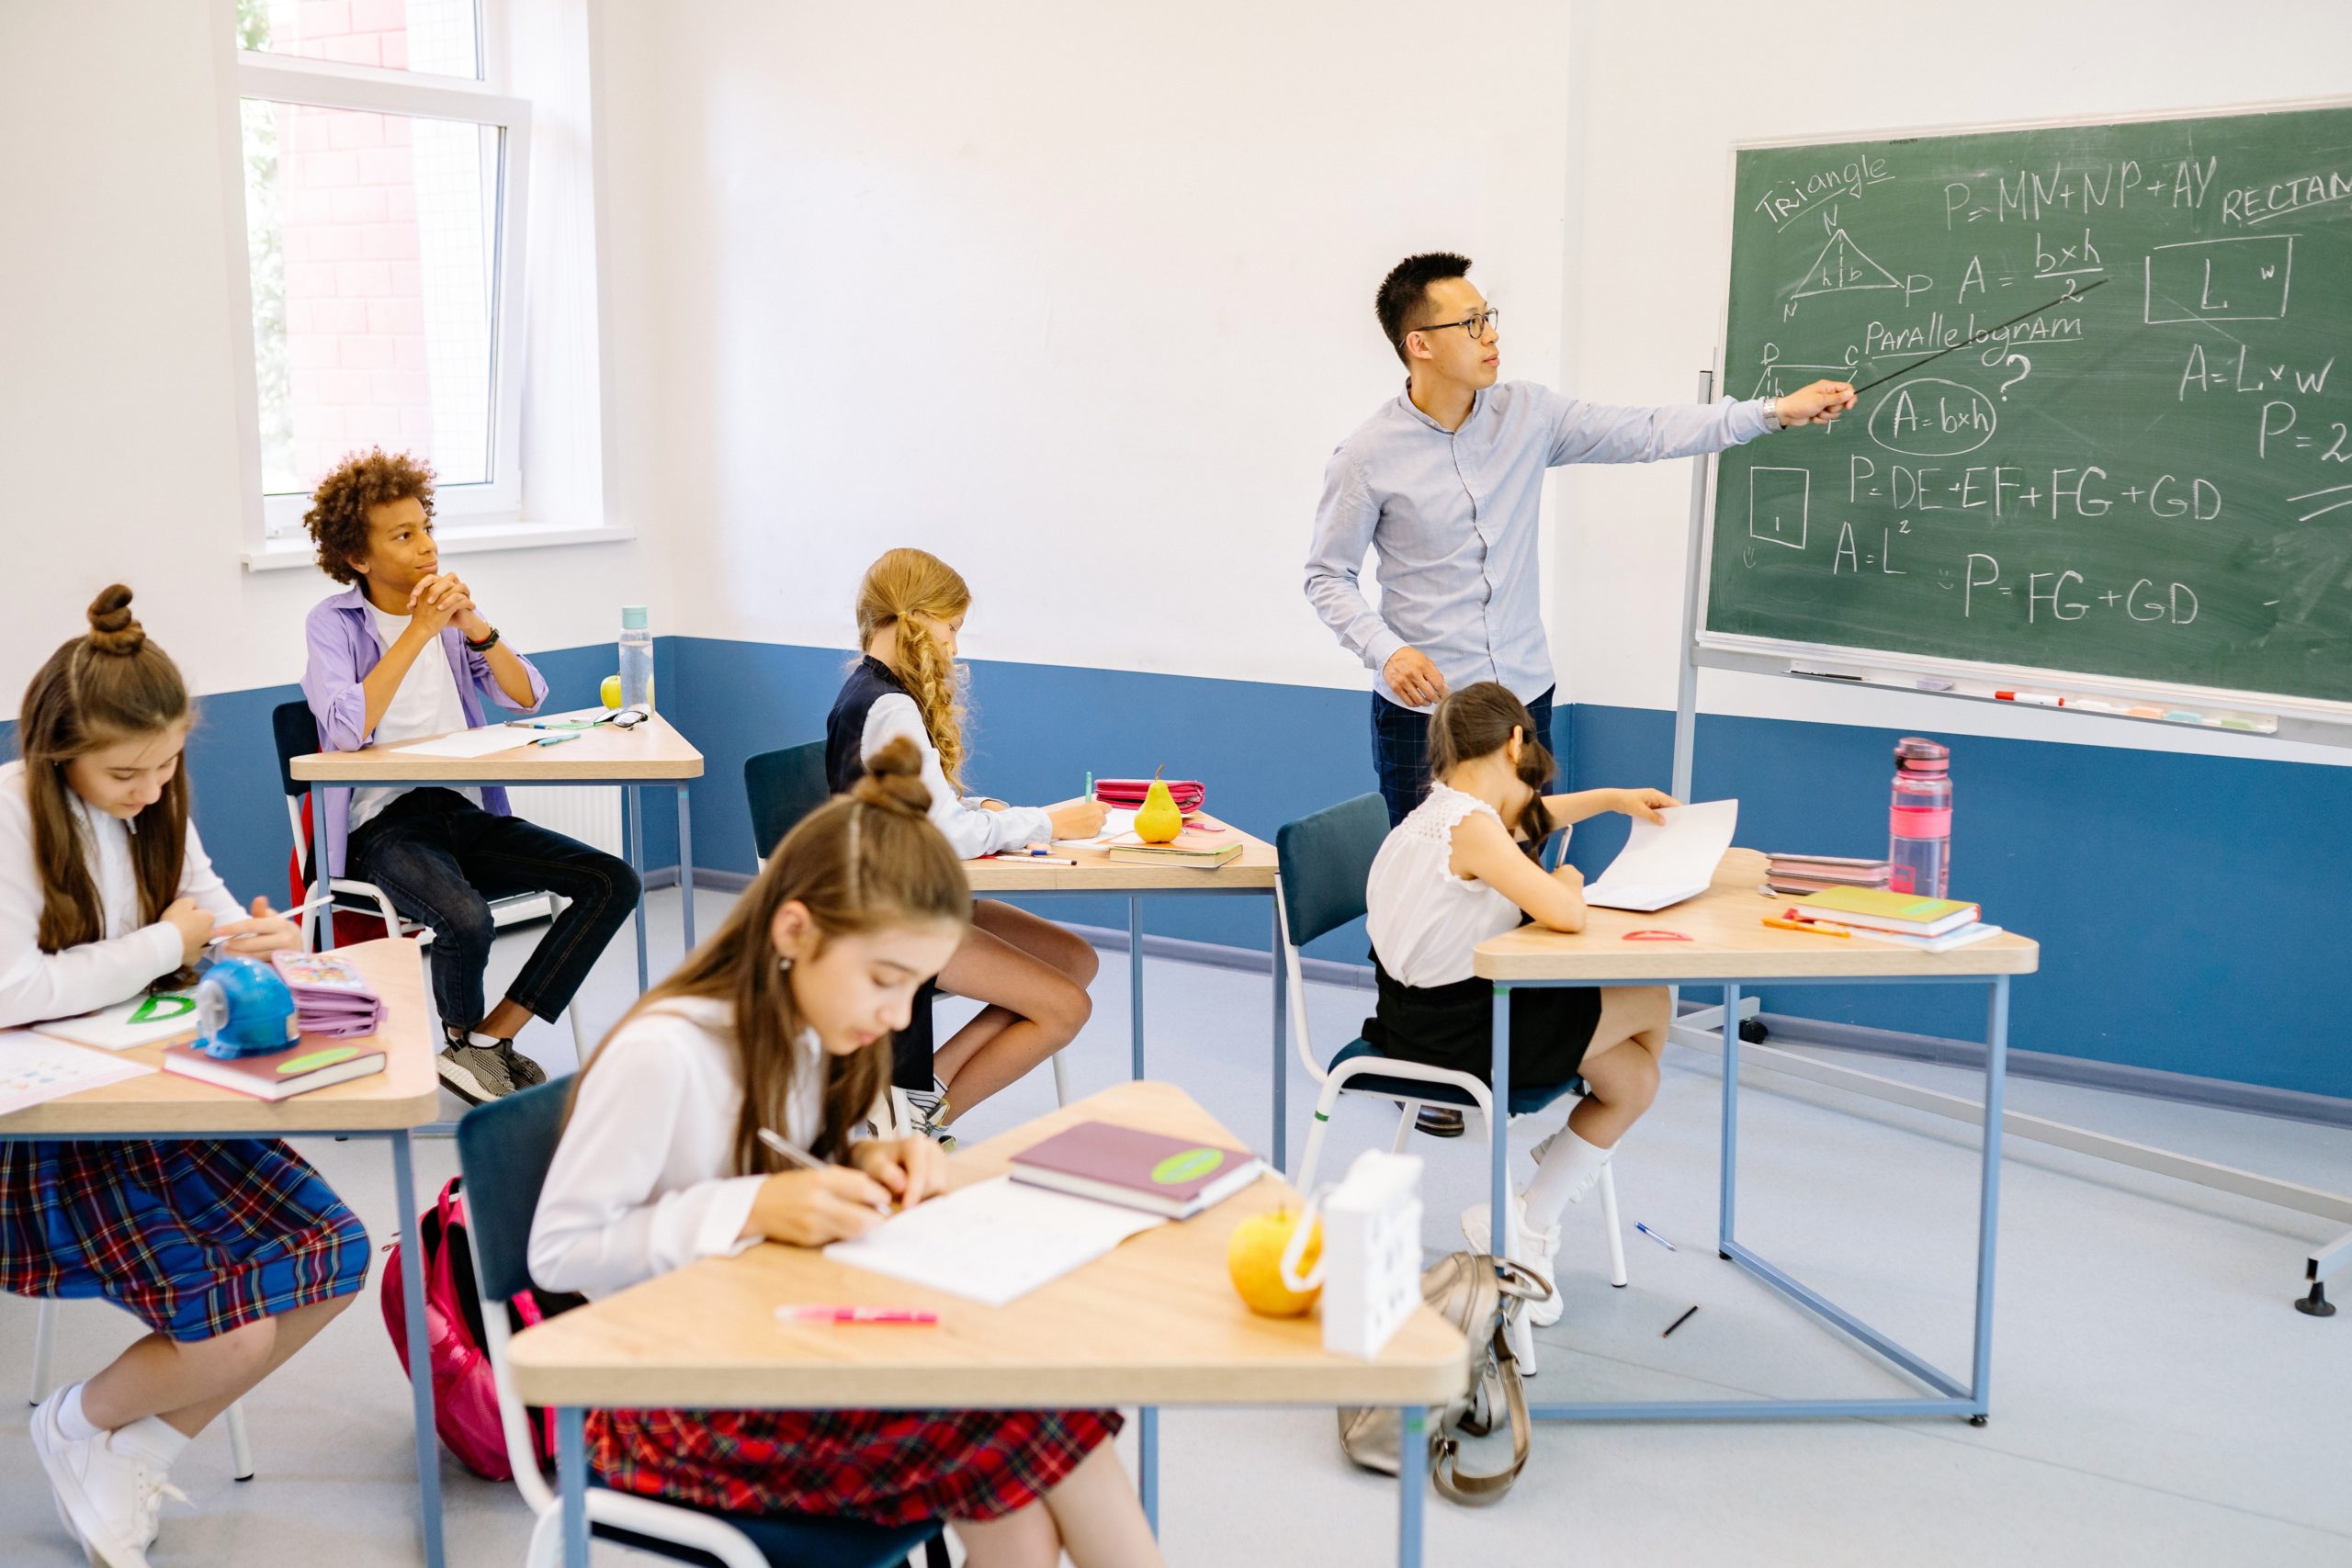 A teacher is teaching maths to a class of school students.